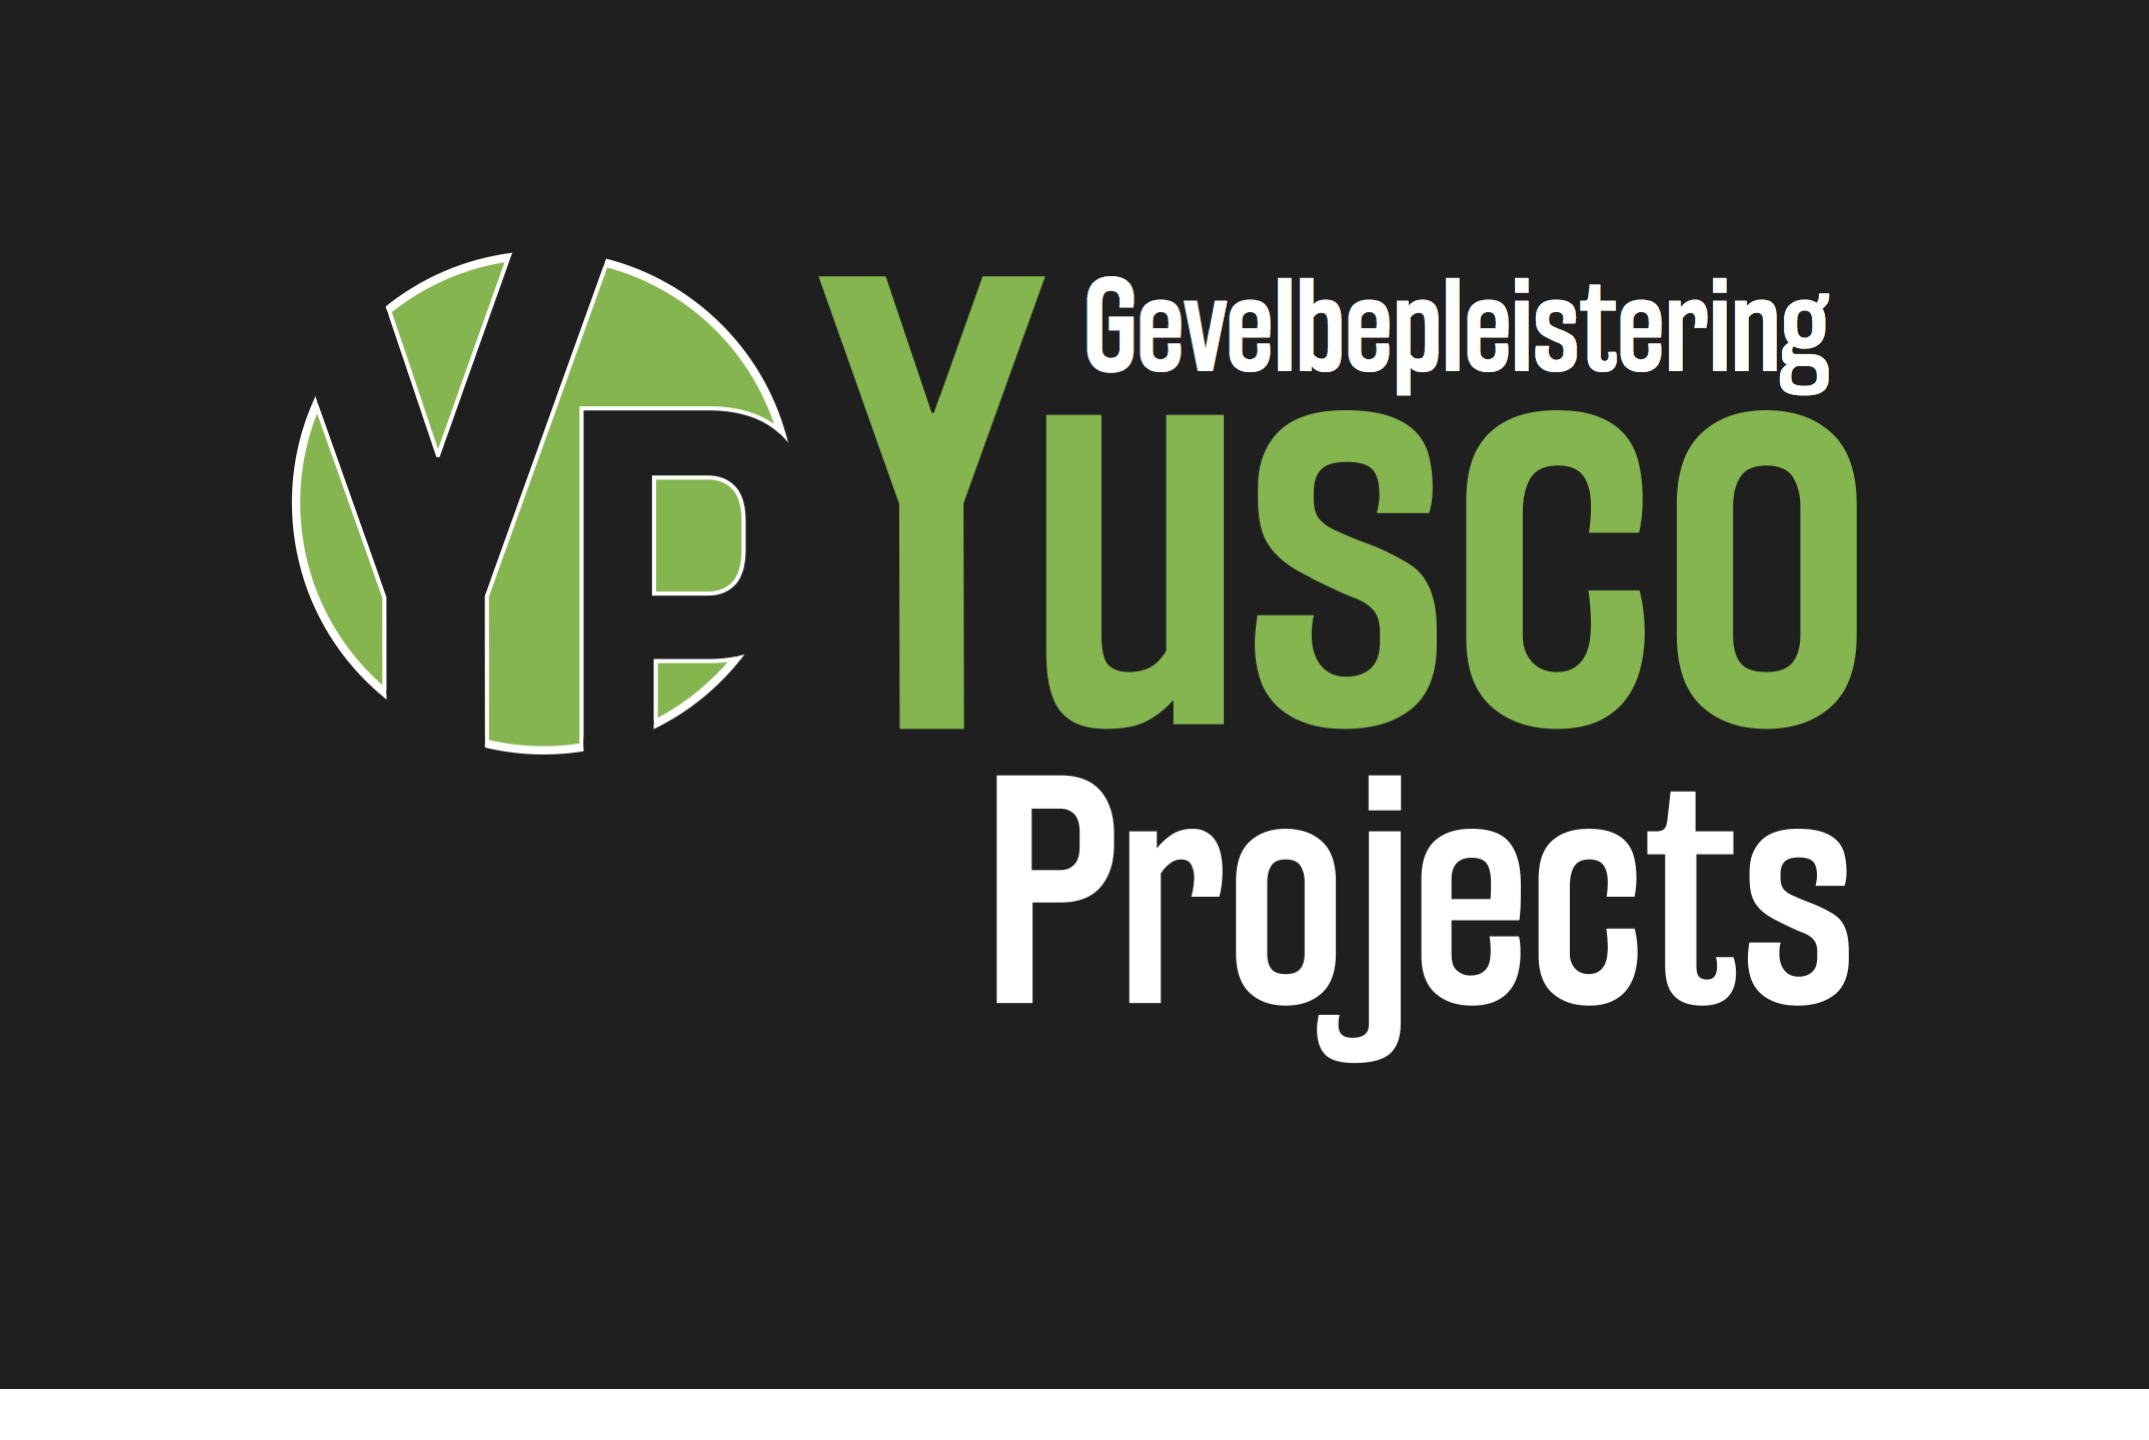 renovatieaannemers Gentbrugge Yusco Projects Gevelbepleistering